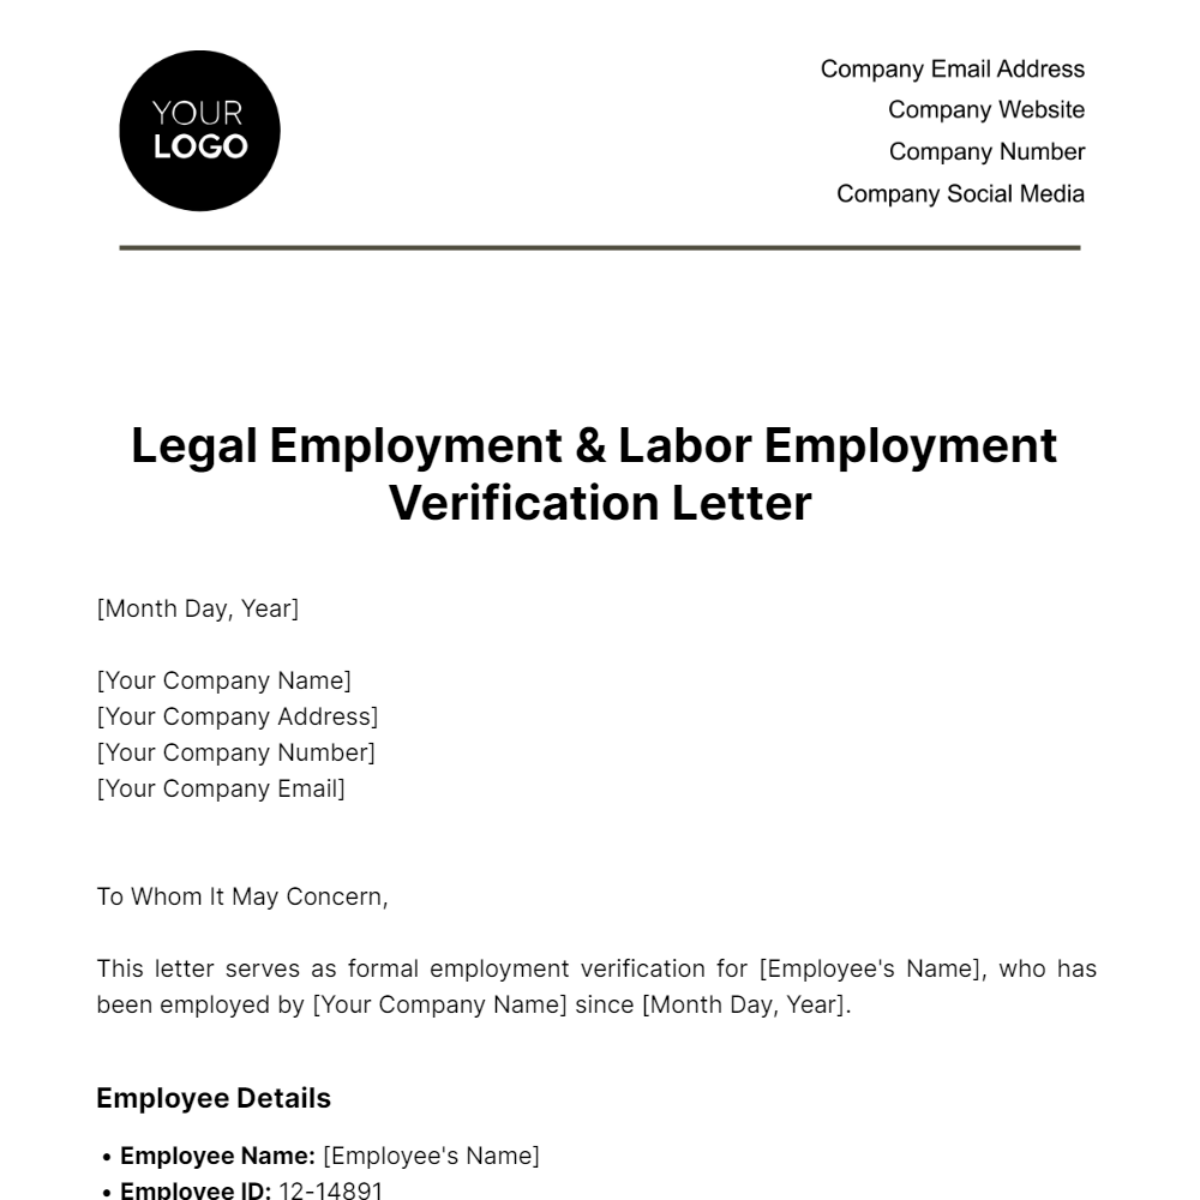 Legal Employment & Labor Employment Verification Letter Template